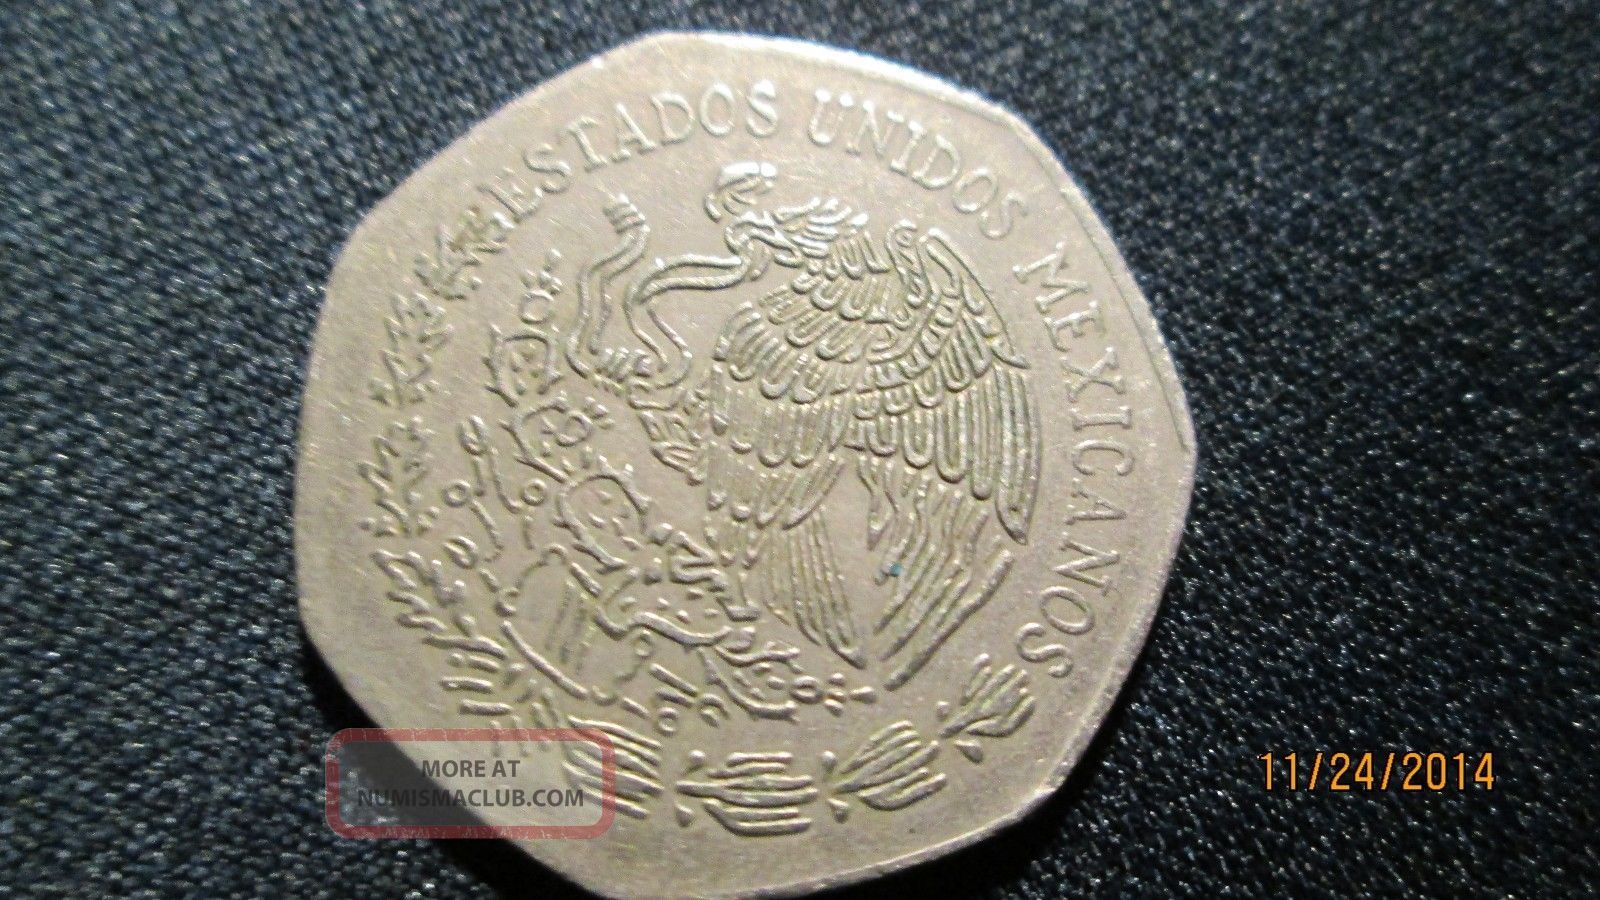 1977-diez-pesos-mexico-10-pesos-coin-circulated-3